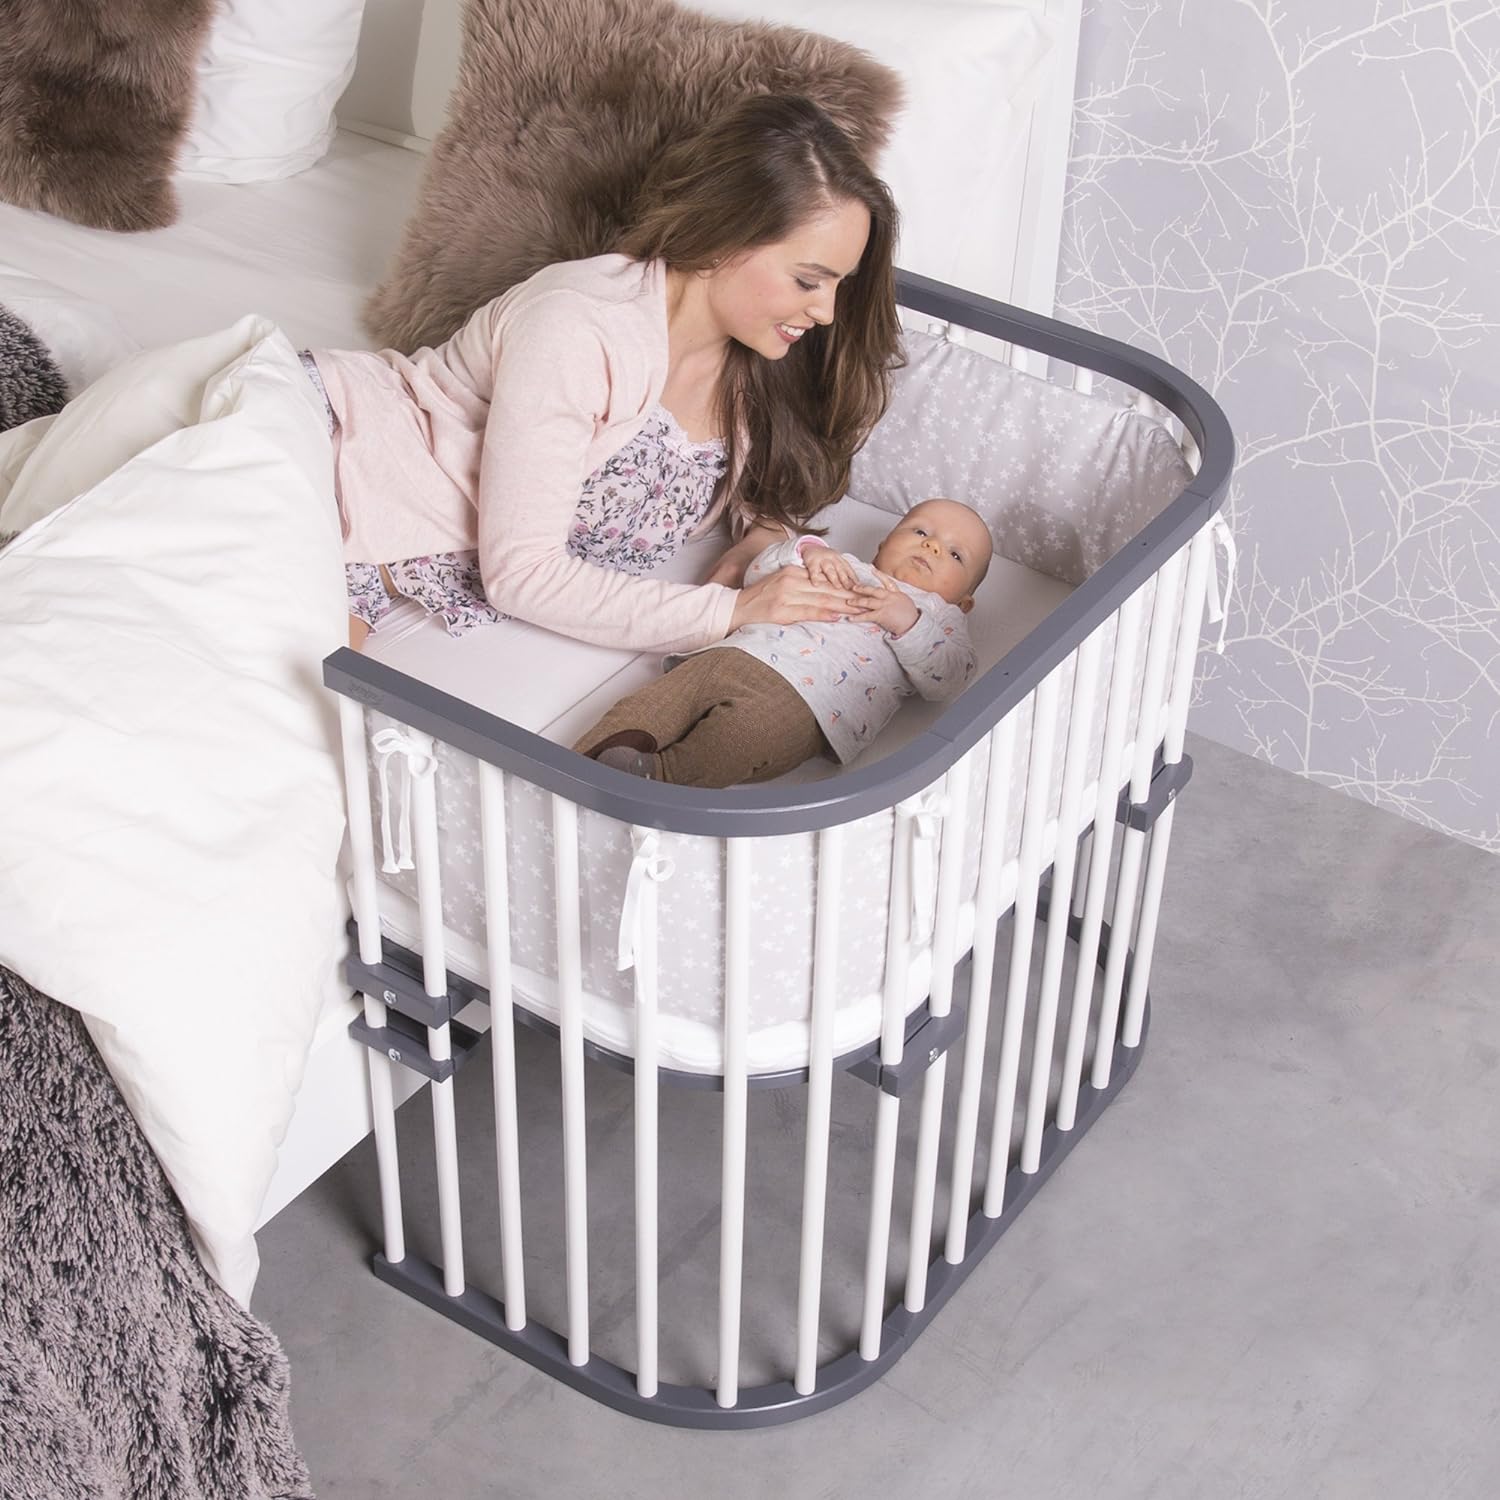 Кровати для младенцев от производителя